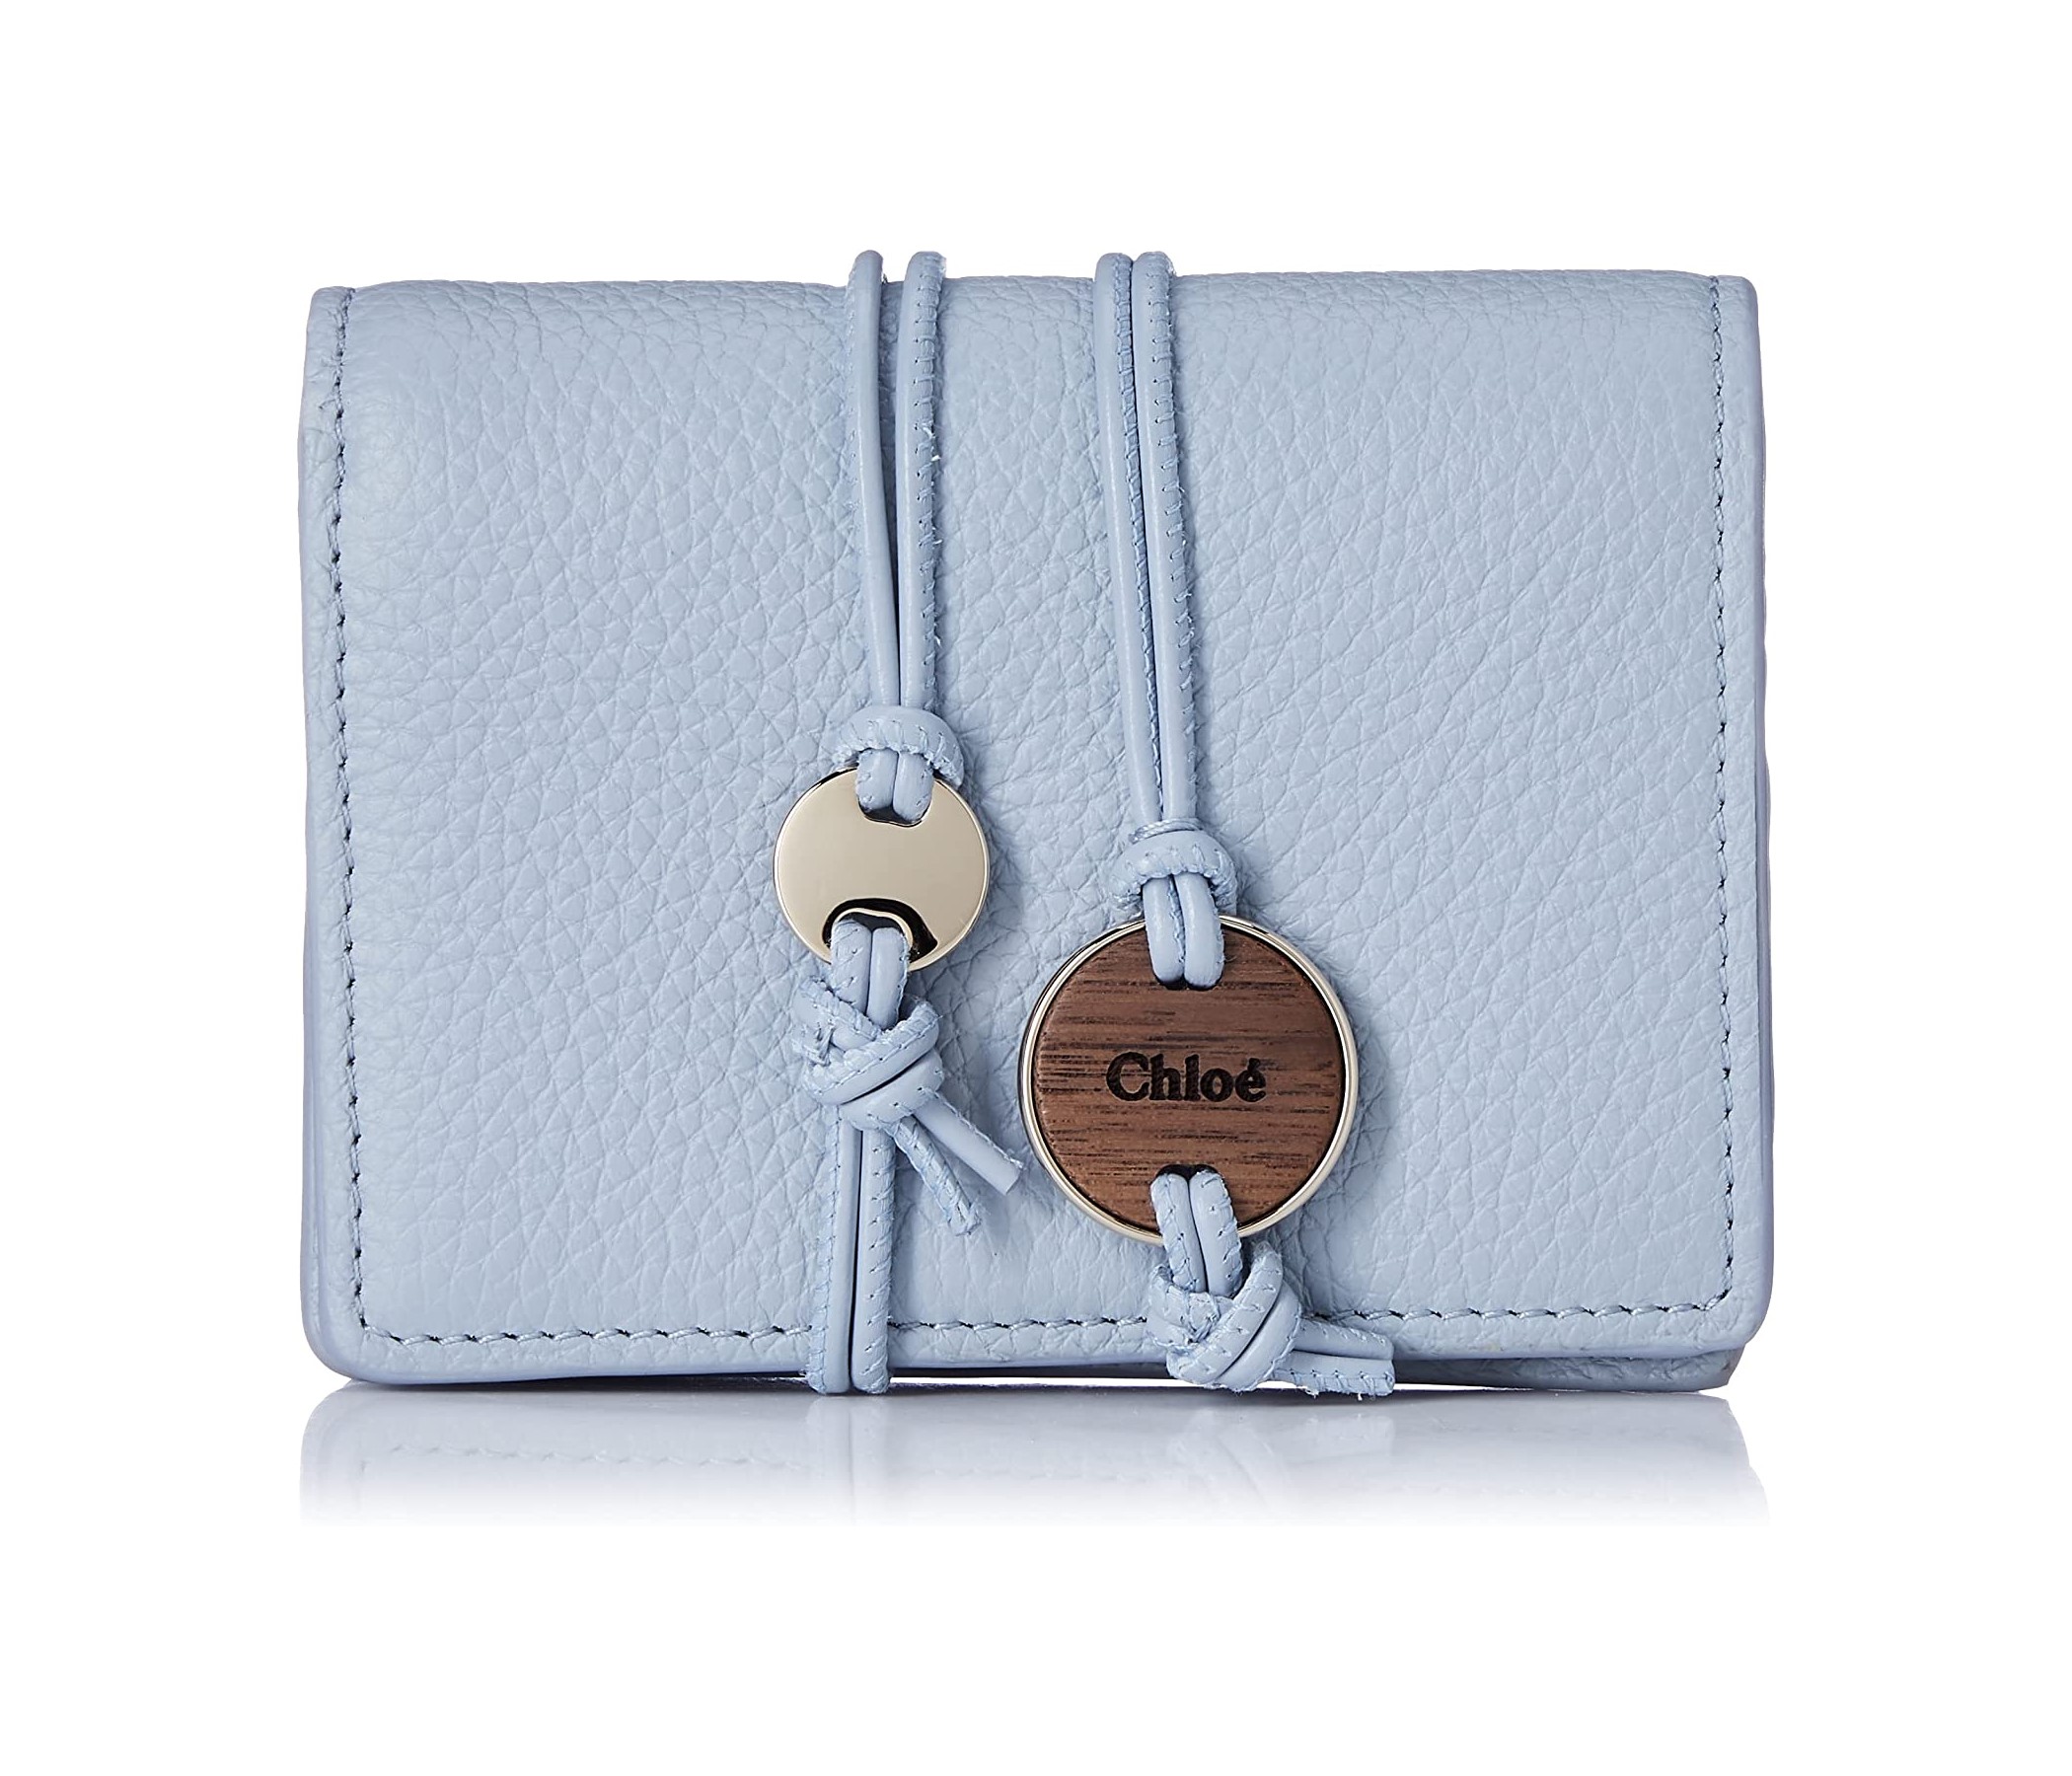 大人かわいいデザインが豊富「Chloé（クロエ）の財布」おすすめ6